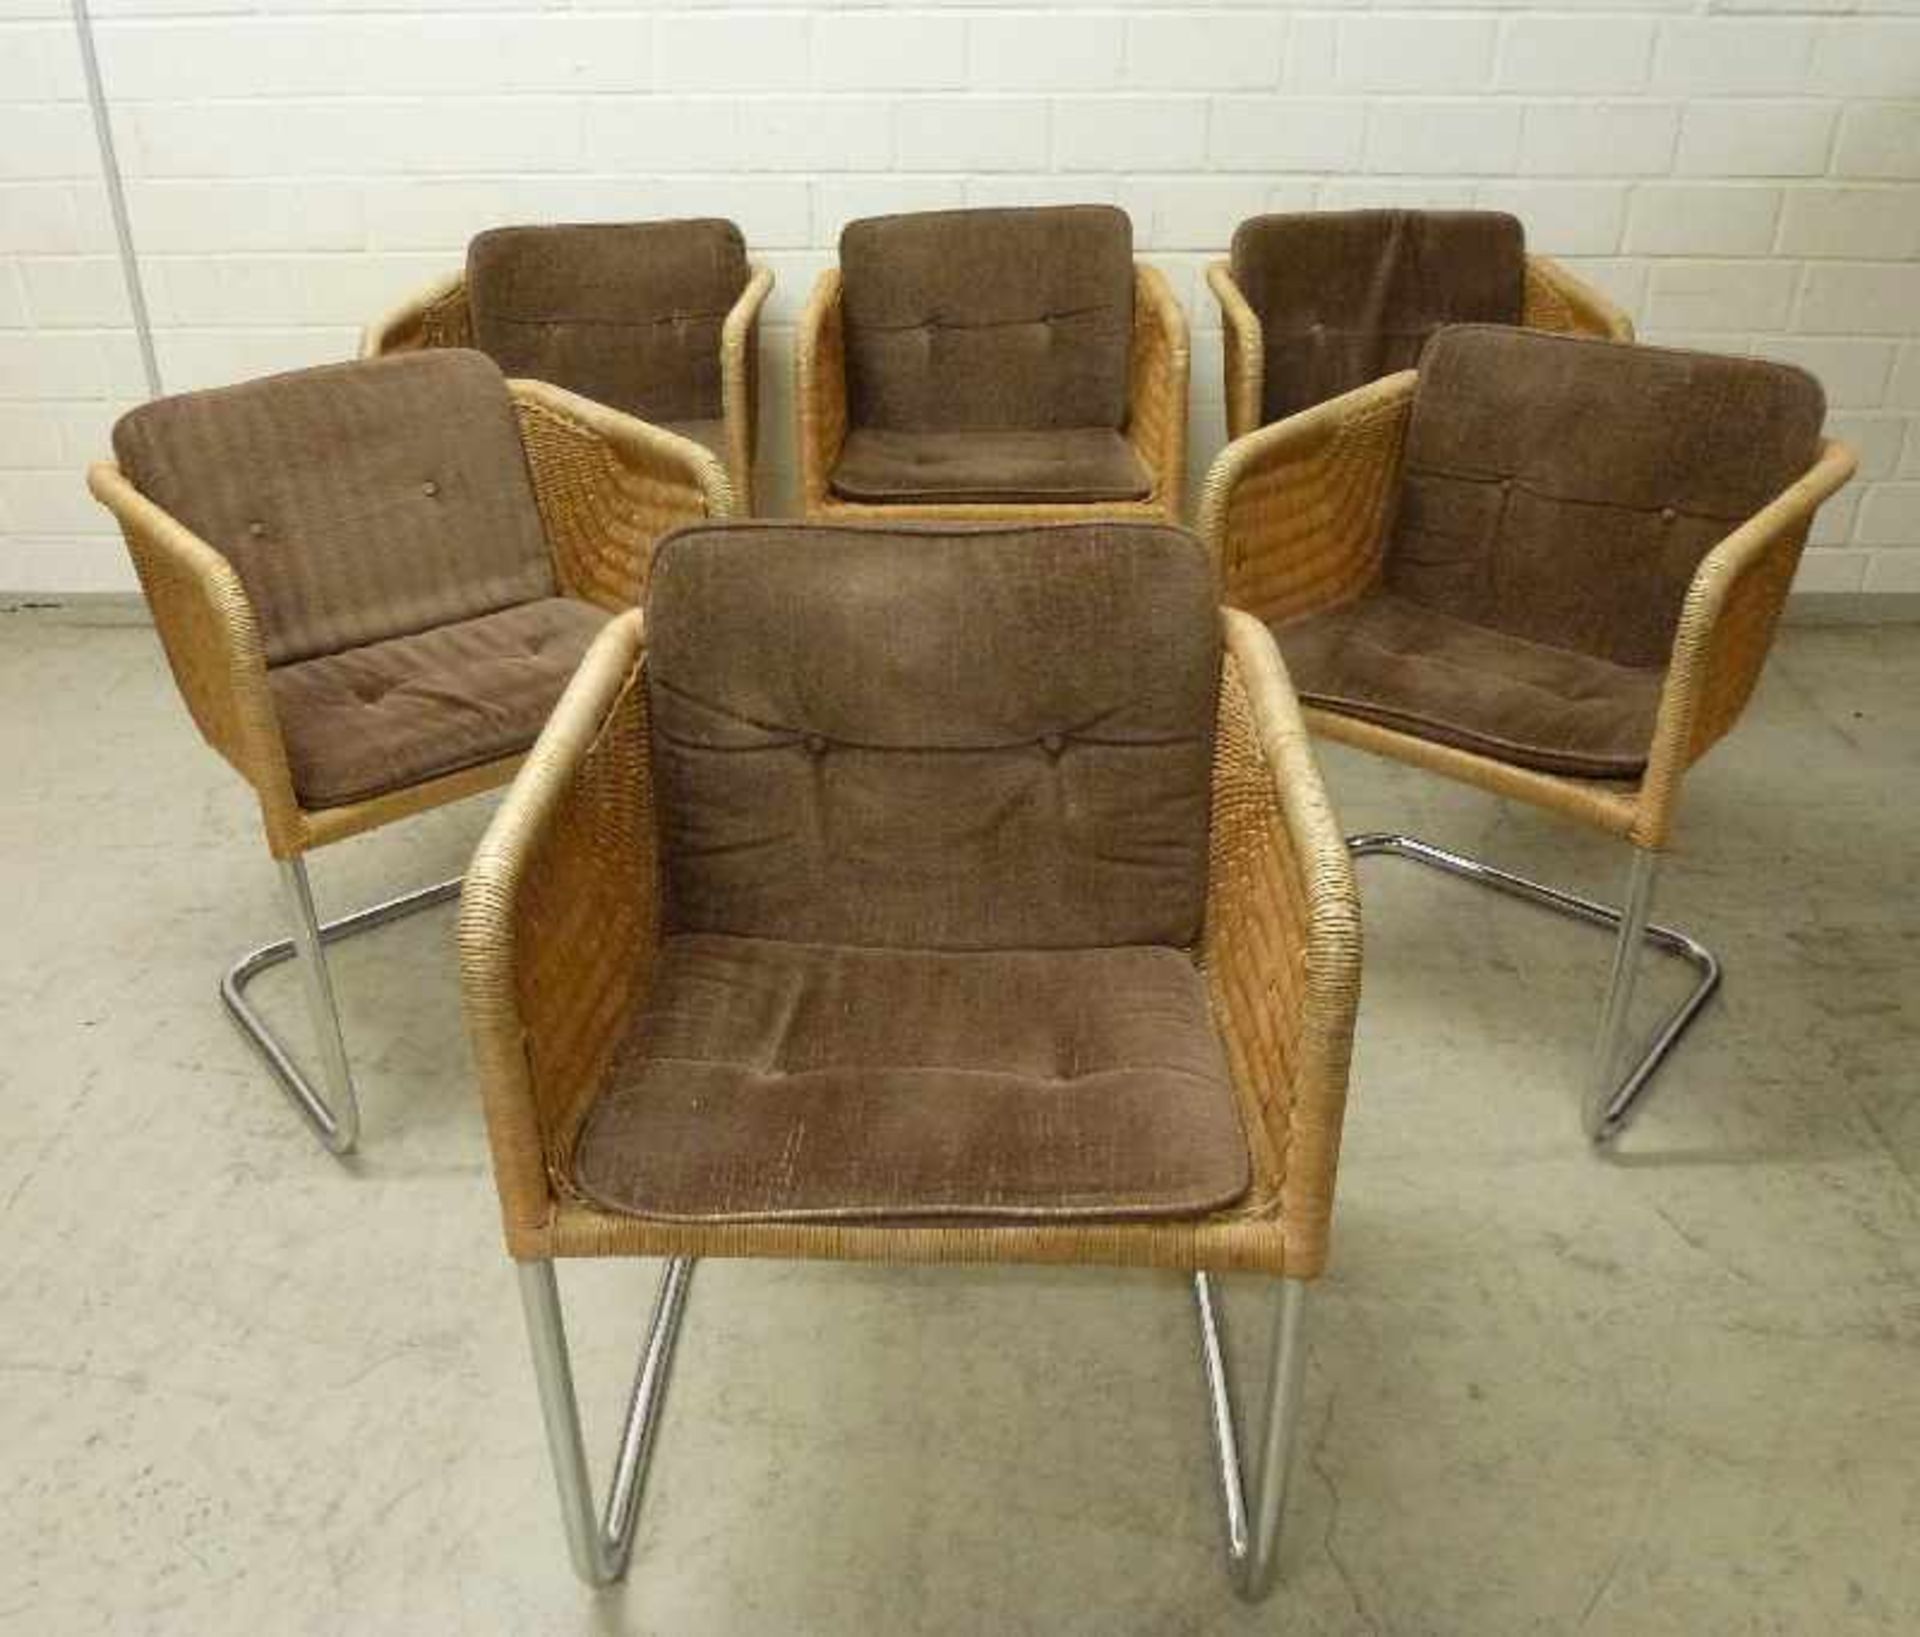 6 Freischwinger Stühle, 1960er Jahre verchromtes Stahlgestell, würfelförmiger Sitz,